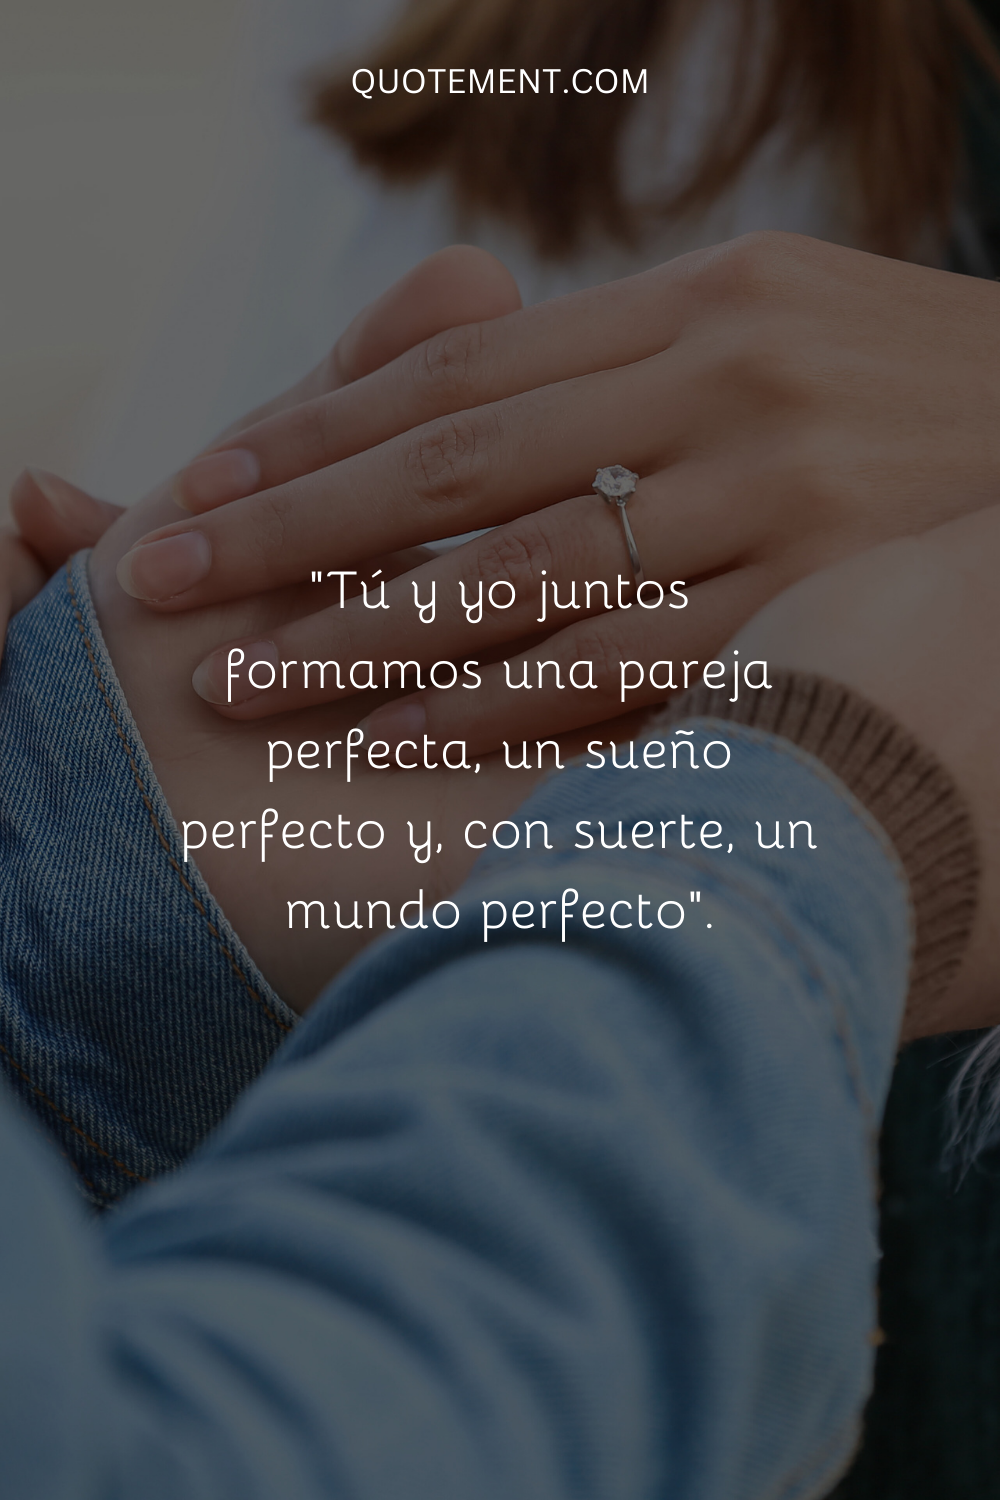 "Tú y yo juntos formamos una pareja perfecta, un sueño perfecto, y ojalá un mundo perfecto